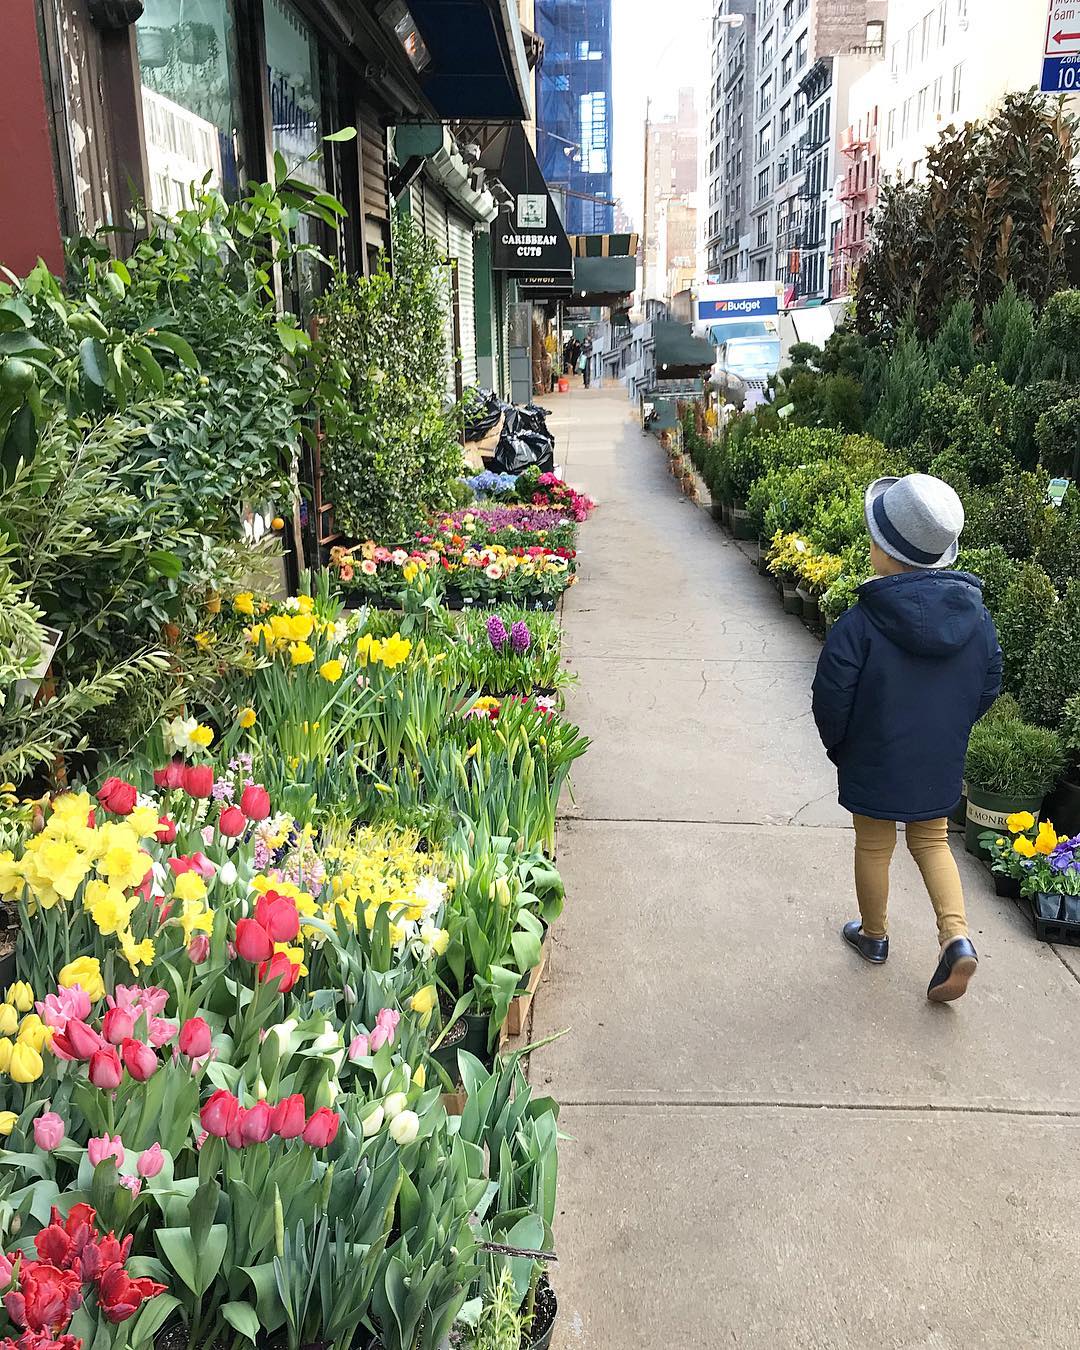 Child Walking Through a Flower Market in New York City. Photo by Instagram user @littlekidnyc